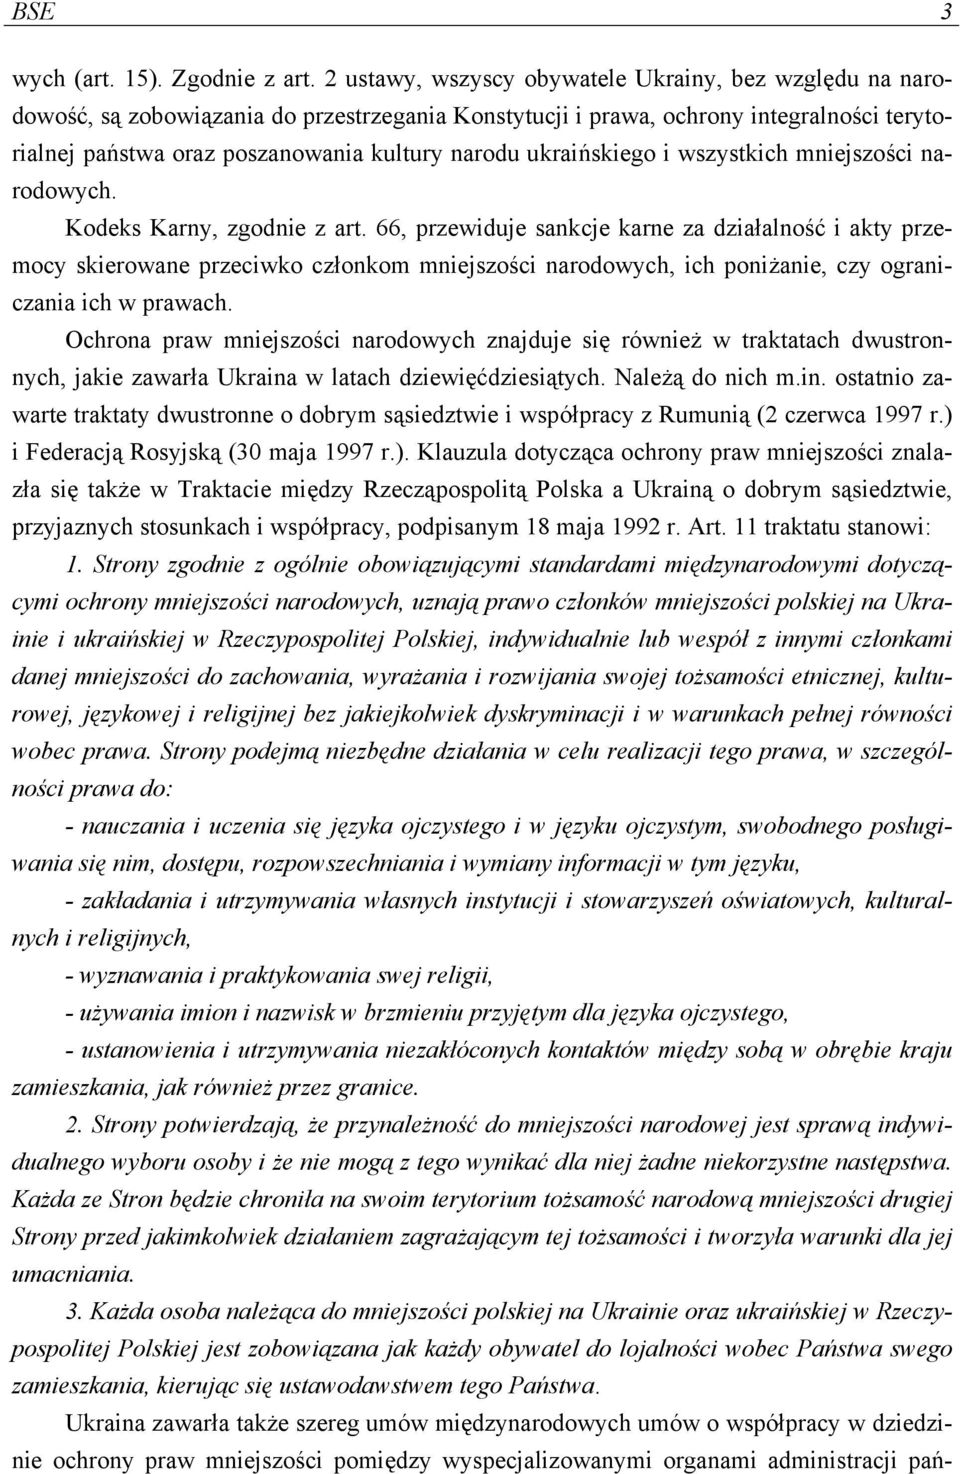 ukraińskiego i wszystkich mniejszości narodowych. Kodeks Karny, zgodnie z art.